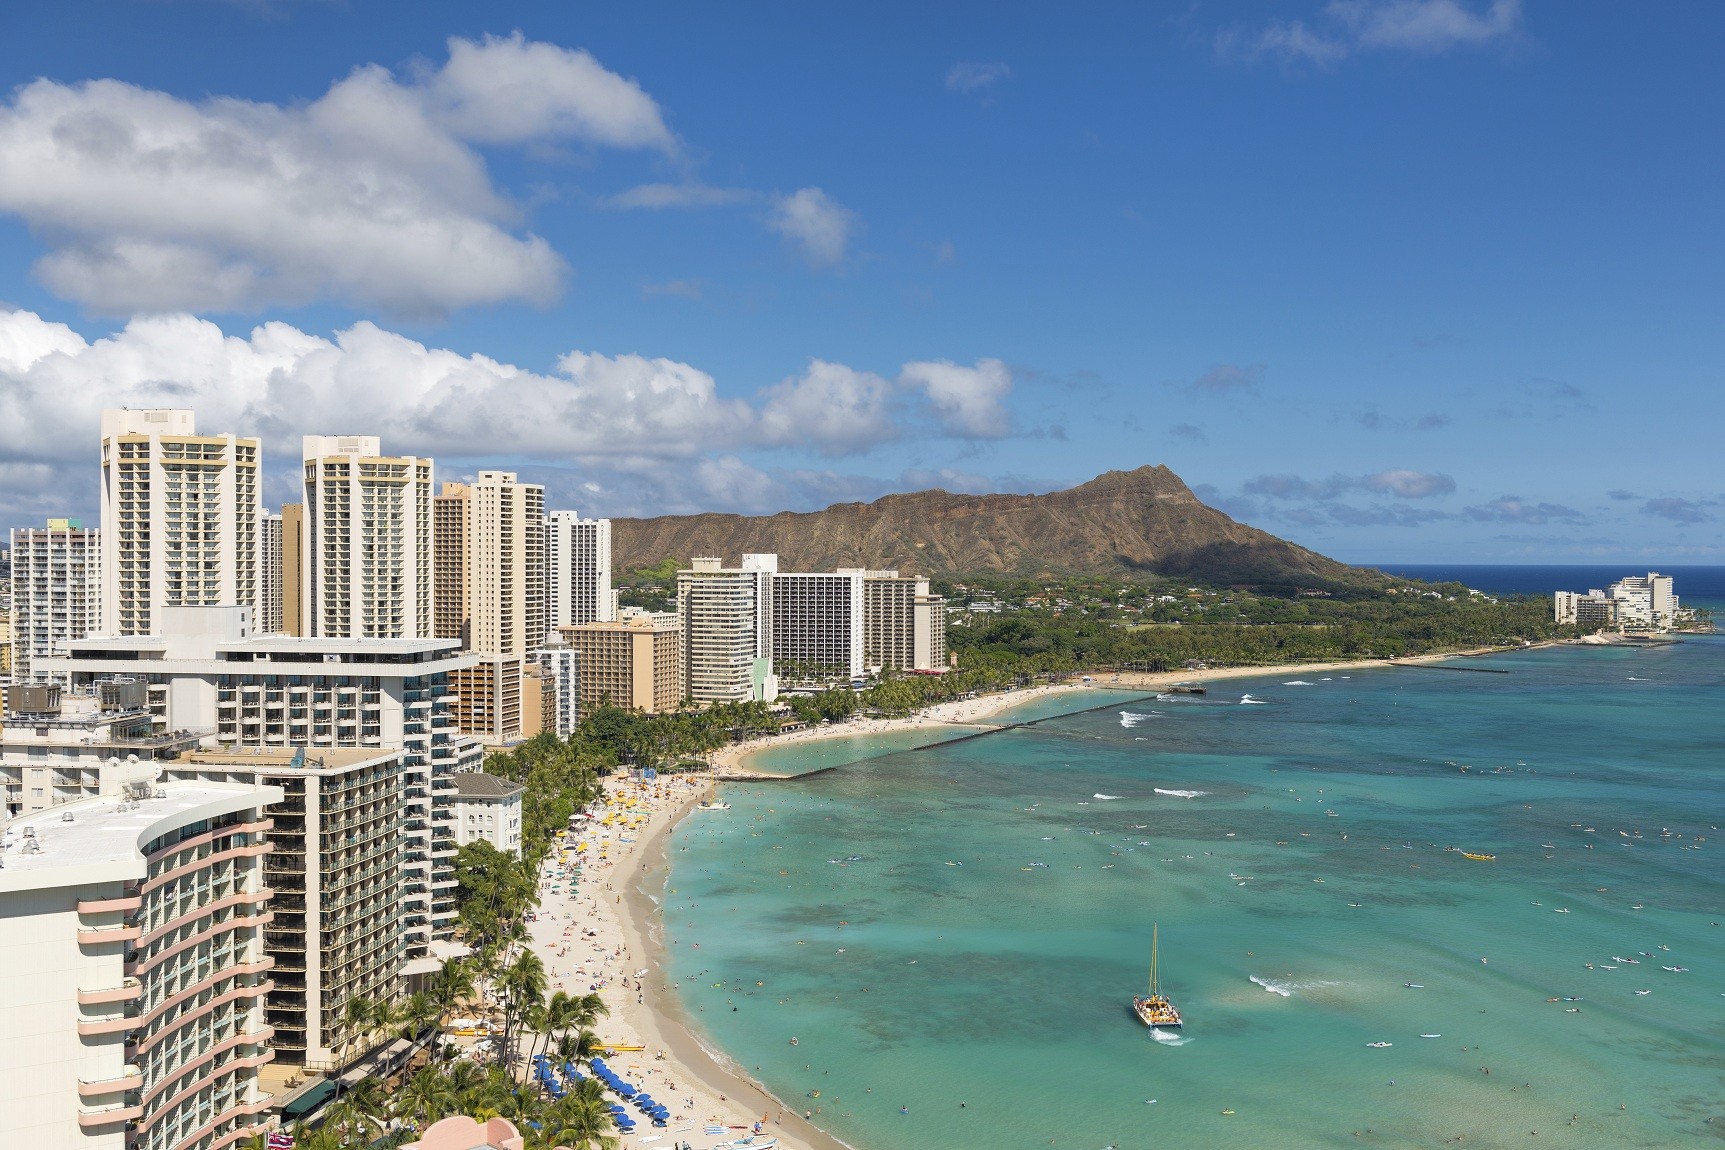 Scenic view of Waikiki Beach